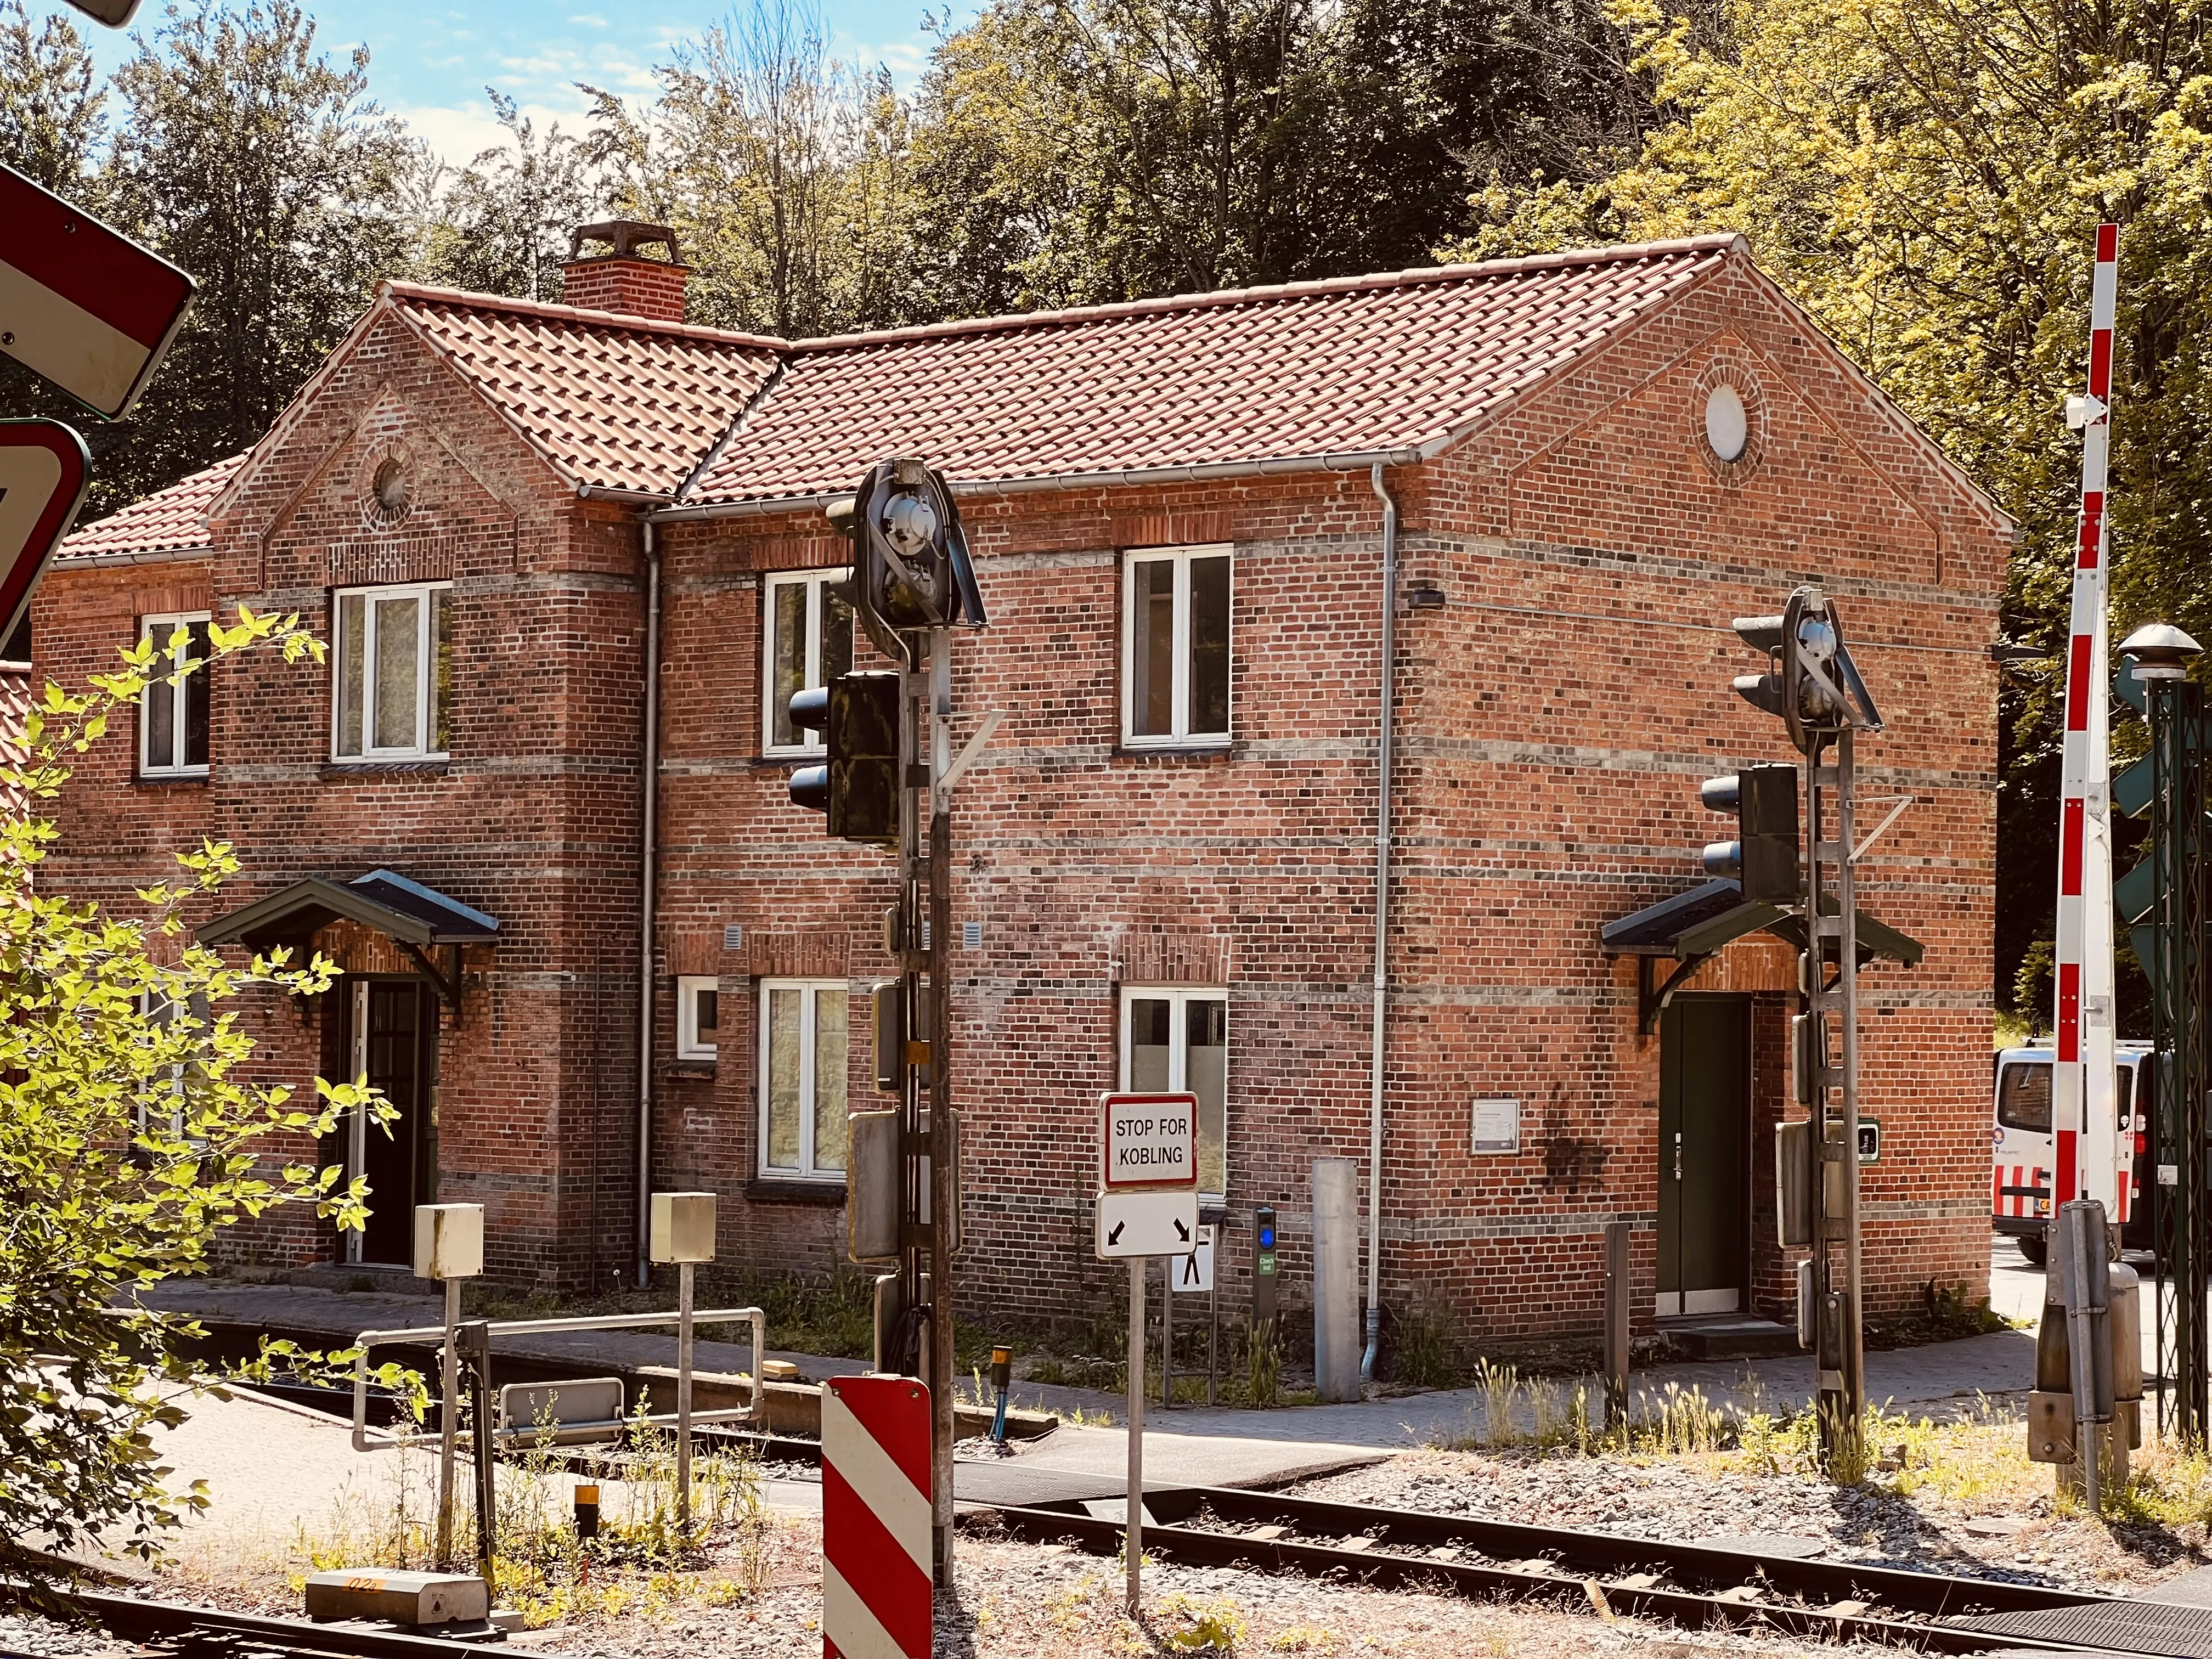 Billede af Kagerup Station.